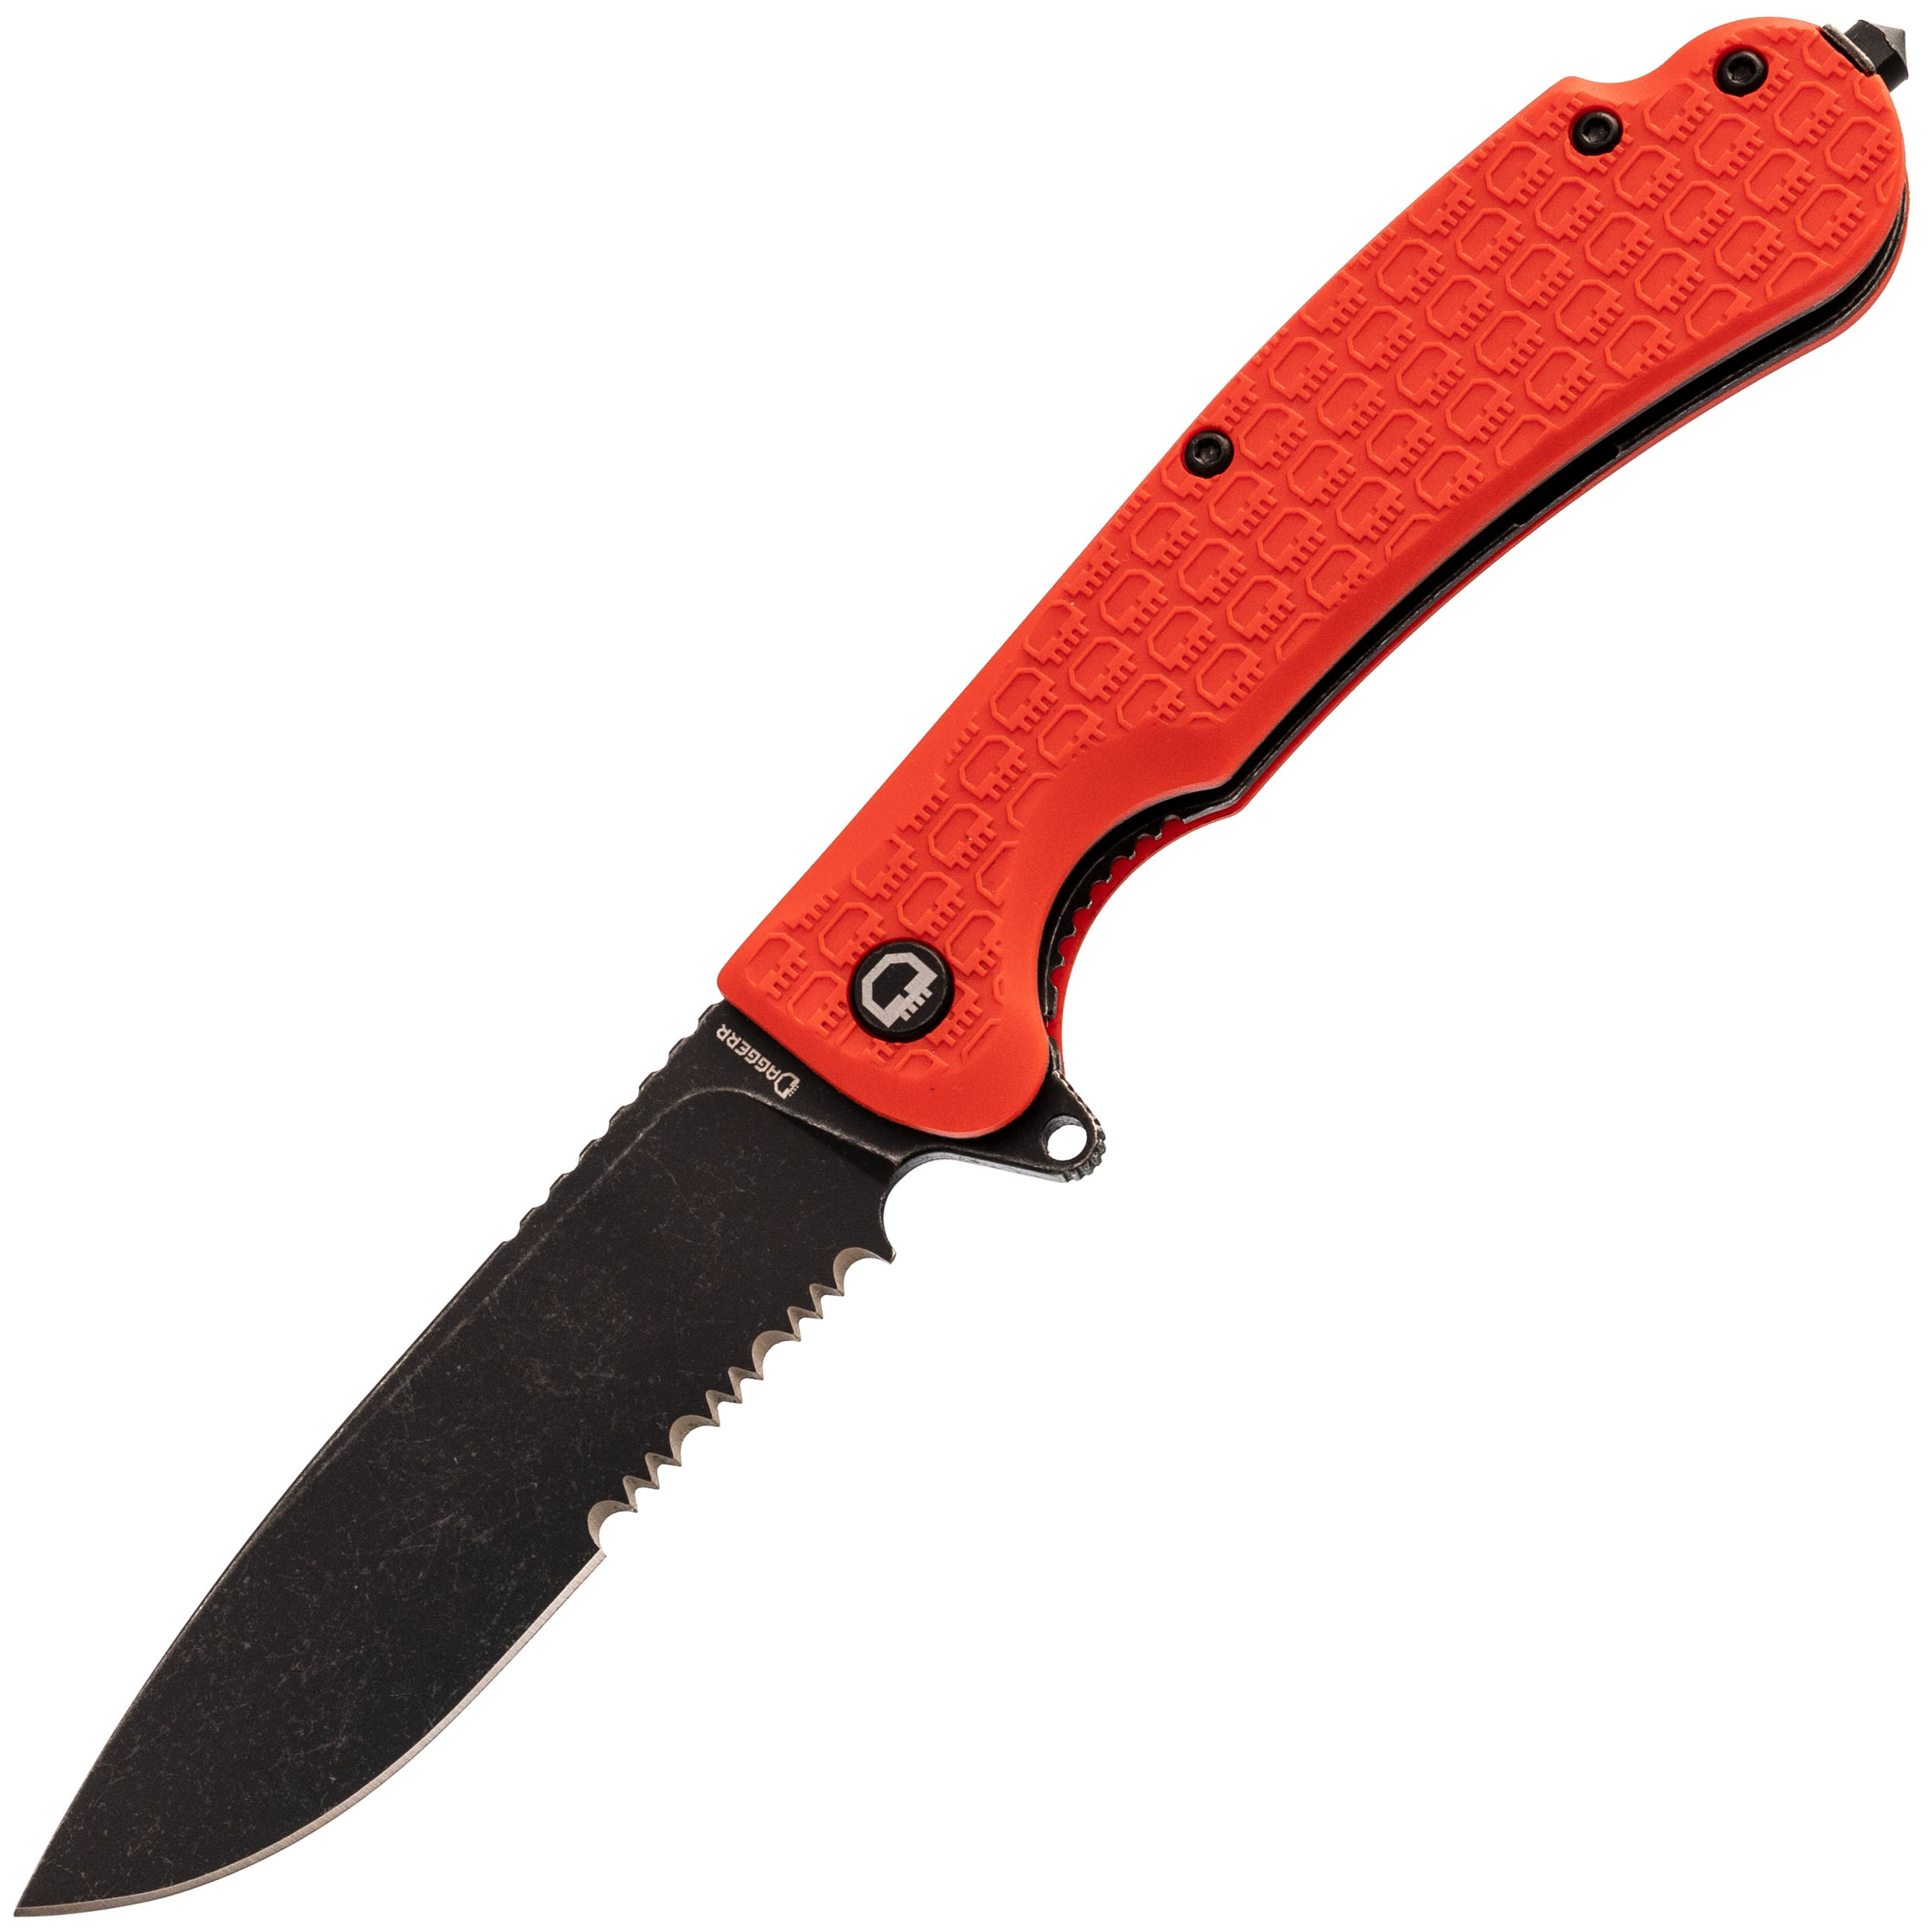 Складной нож Daggerr Wocket Orange BW Serrated, сталь 8Cr14MoV, рукоять FRN складной нож boker icepick dagger сталь vg 10 рукоять carbon fiber